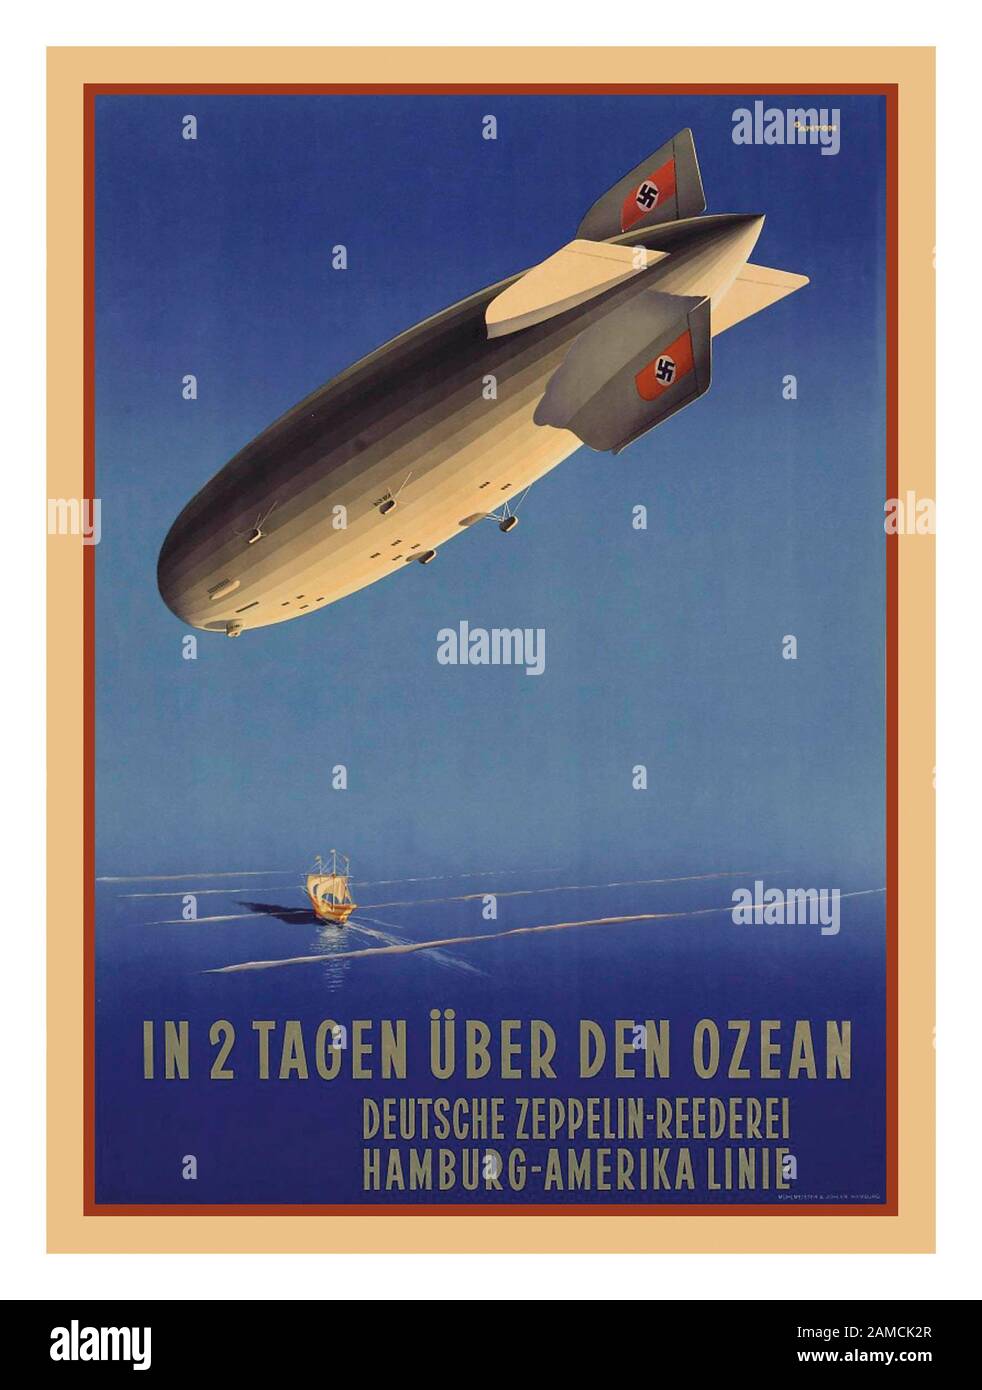 Vintage 1930 l'aviateur allemand Zeppelin avec le parti nazi Swastikas sur les ailerons de queue affiche 'IN 2 TAGEN UBER DEN OZEAN' (EN 2 JOURS AU-DESSUS DE L'OCÉAN) HAMBOURG-AMÉRIQUE offset lithographie en couleurs, c.Uber, imprimée par Mühlmeister & Johler Hamburg, Anton Ottoman (1895-1976) Banque D'Images